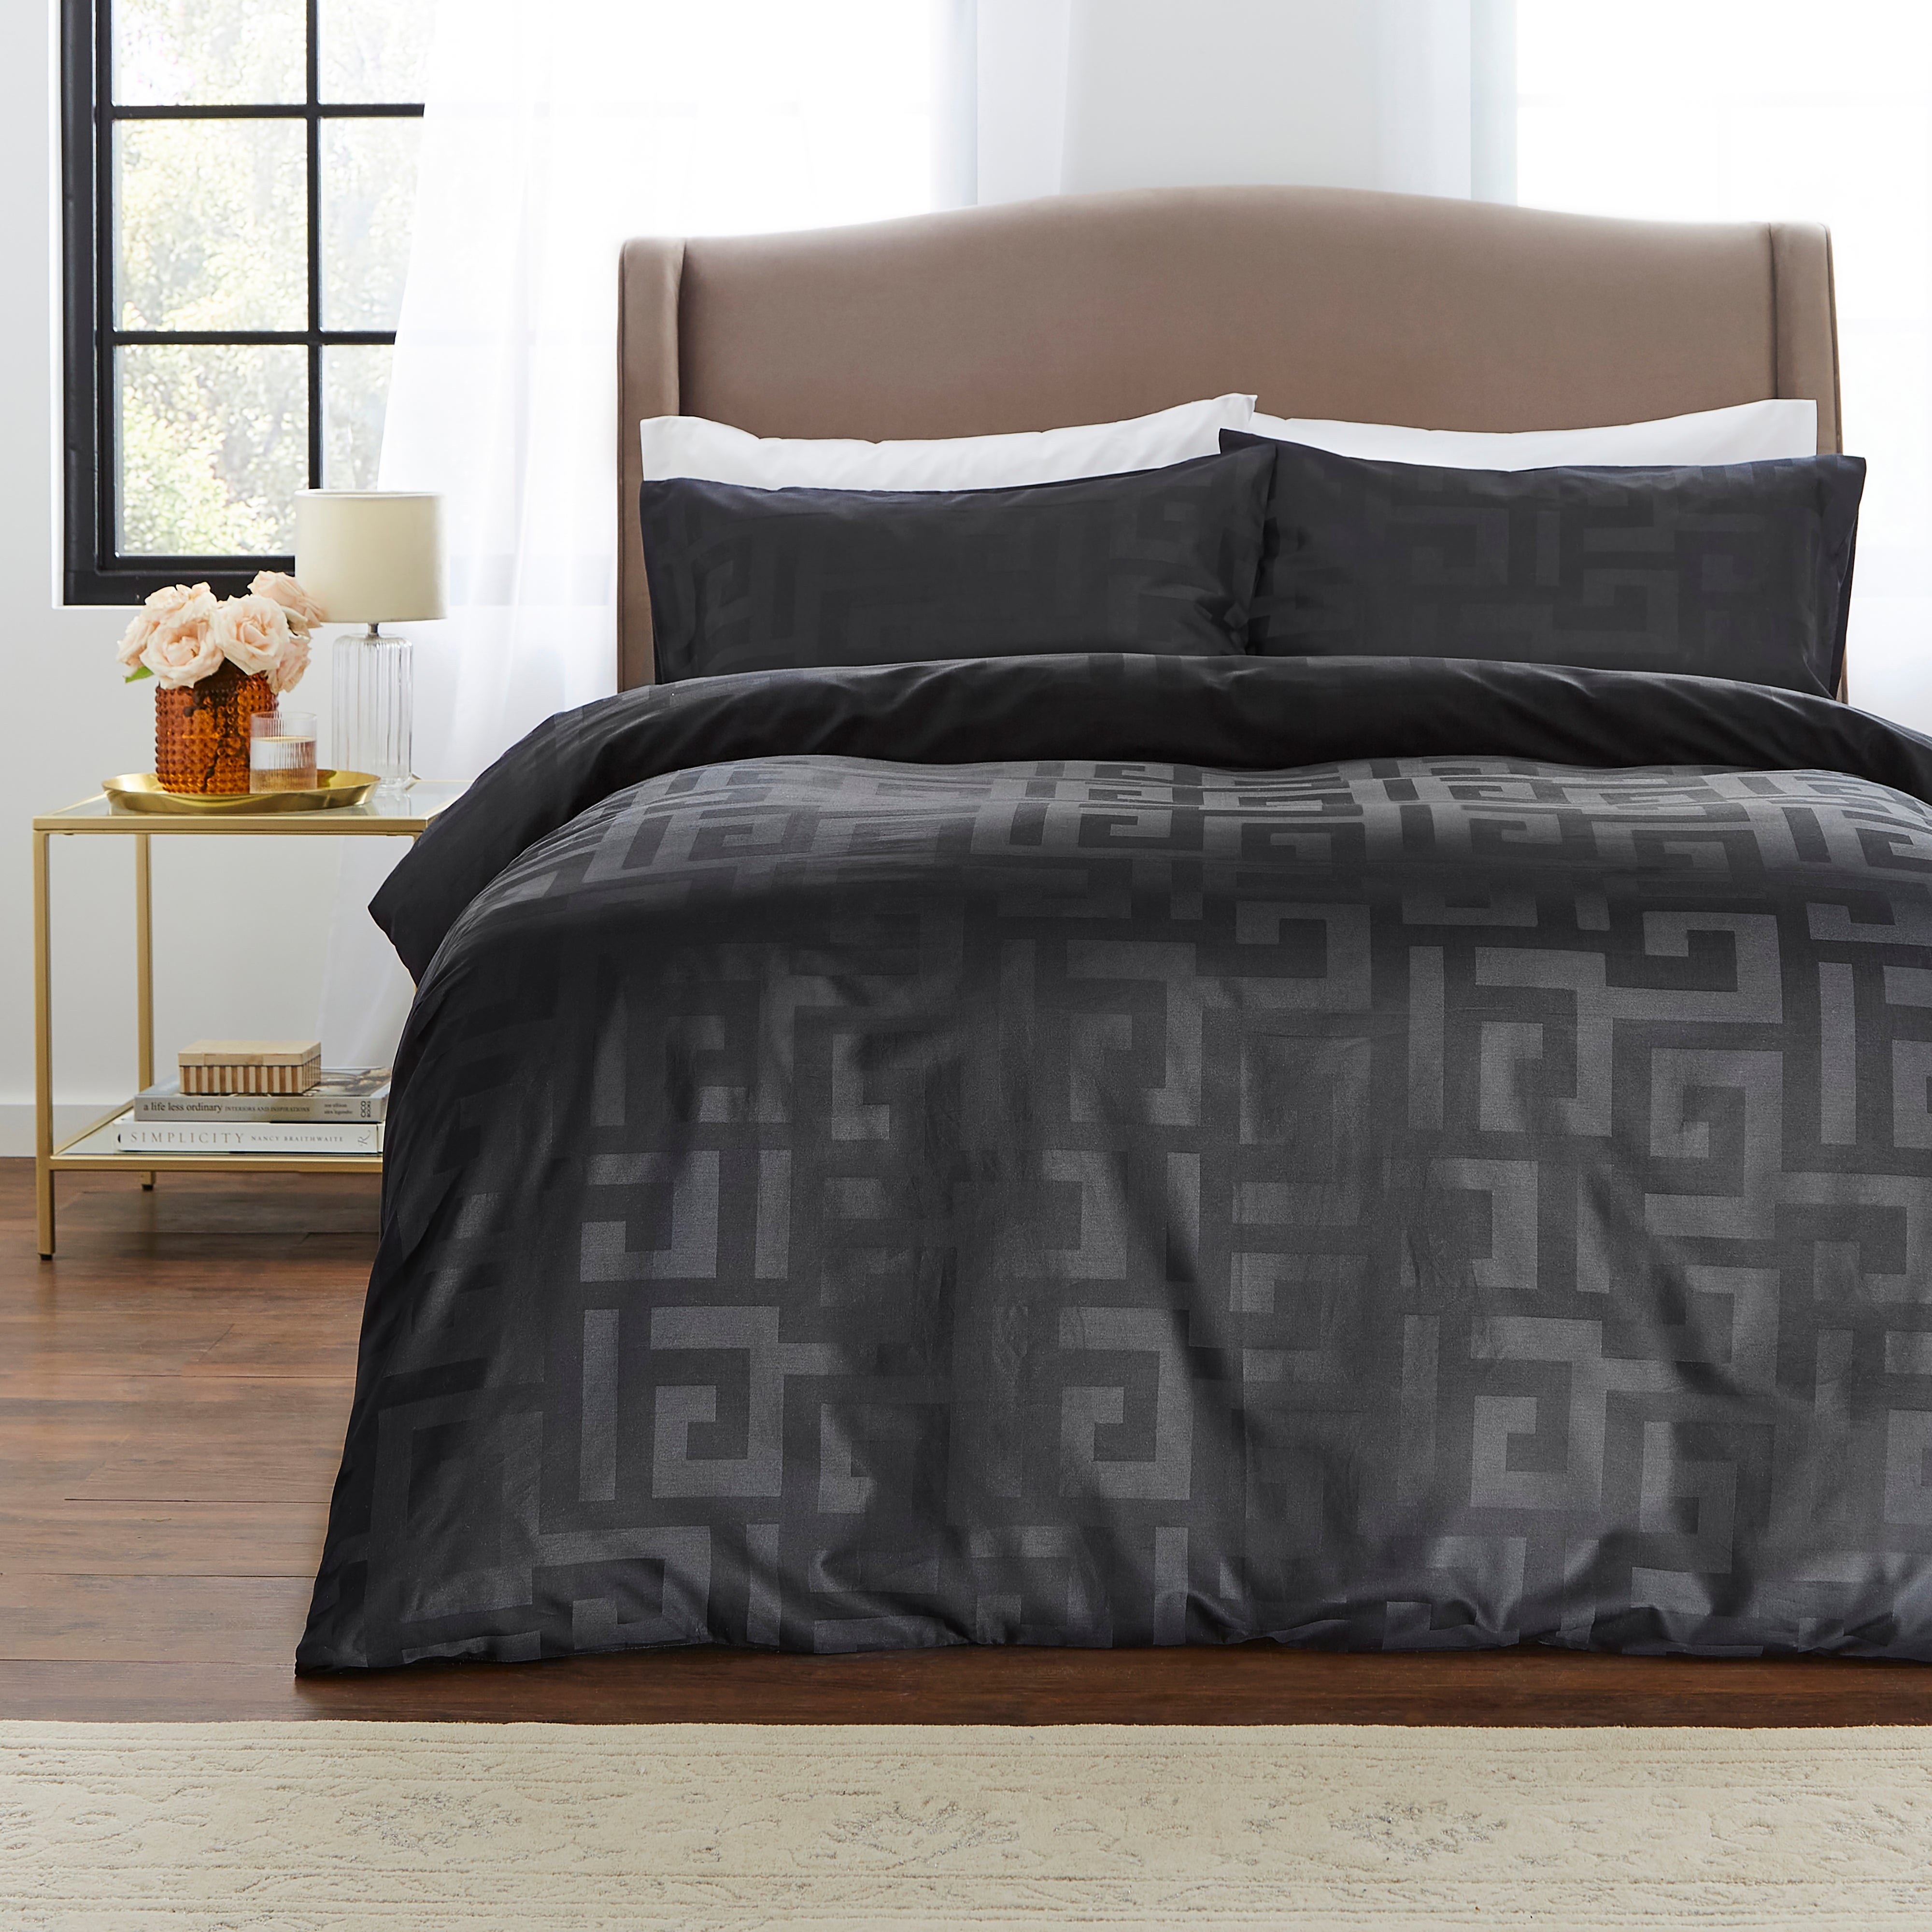 Hotel Cotton Geometric Black Duvet Cover Pillowcase Set Black